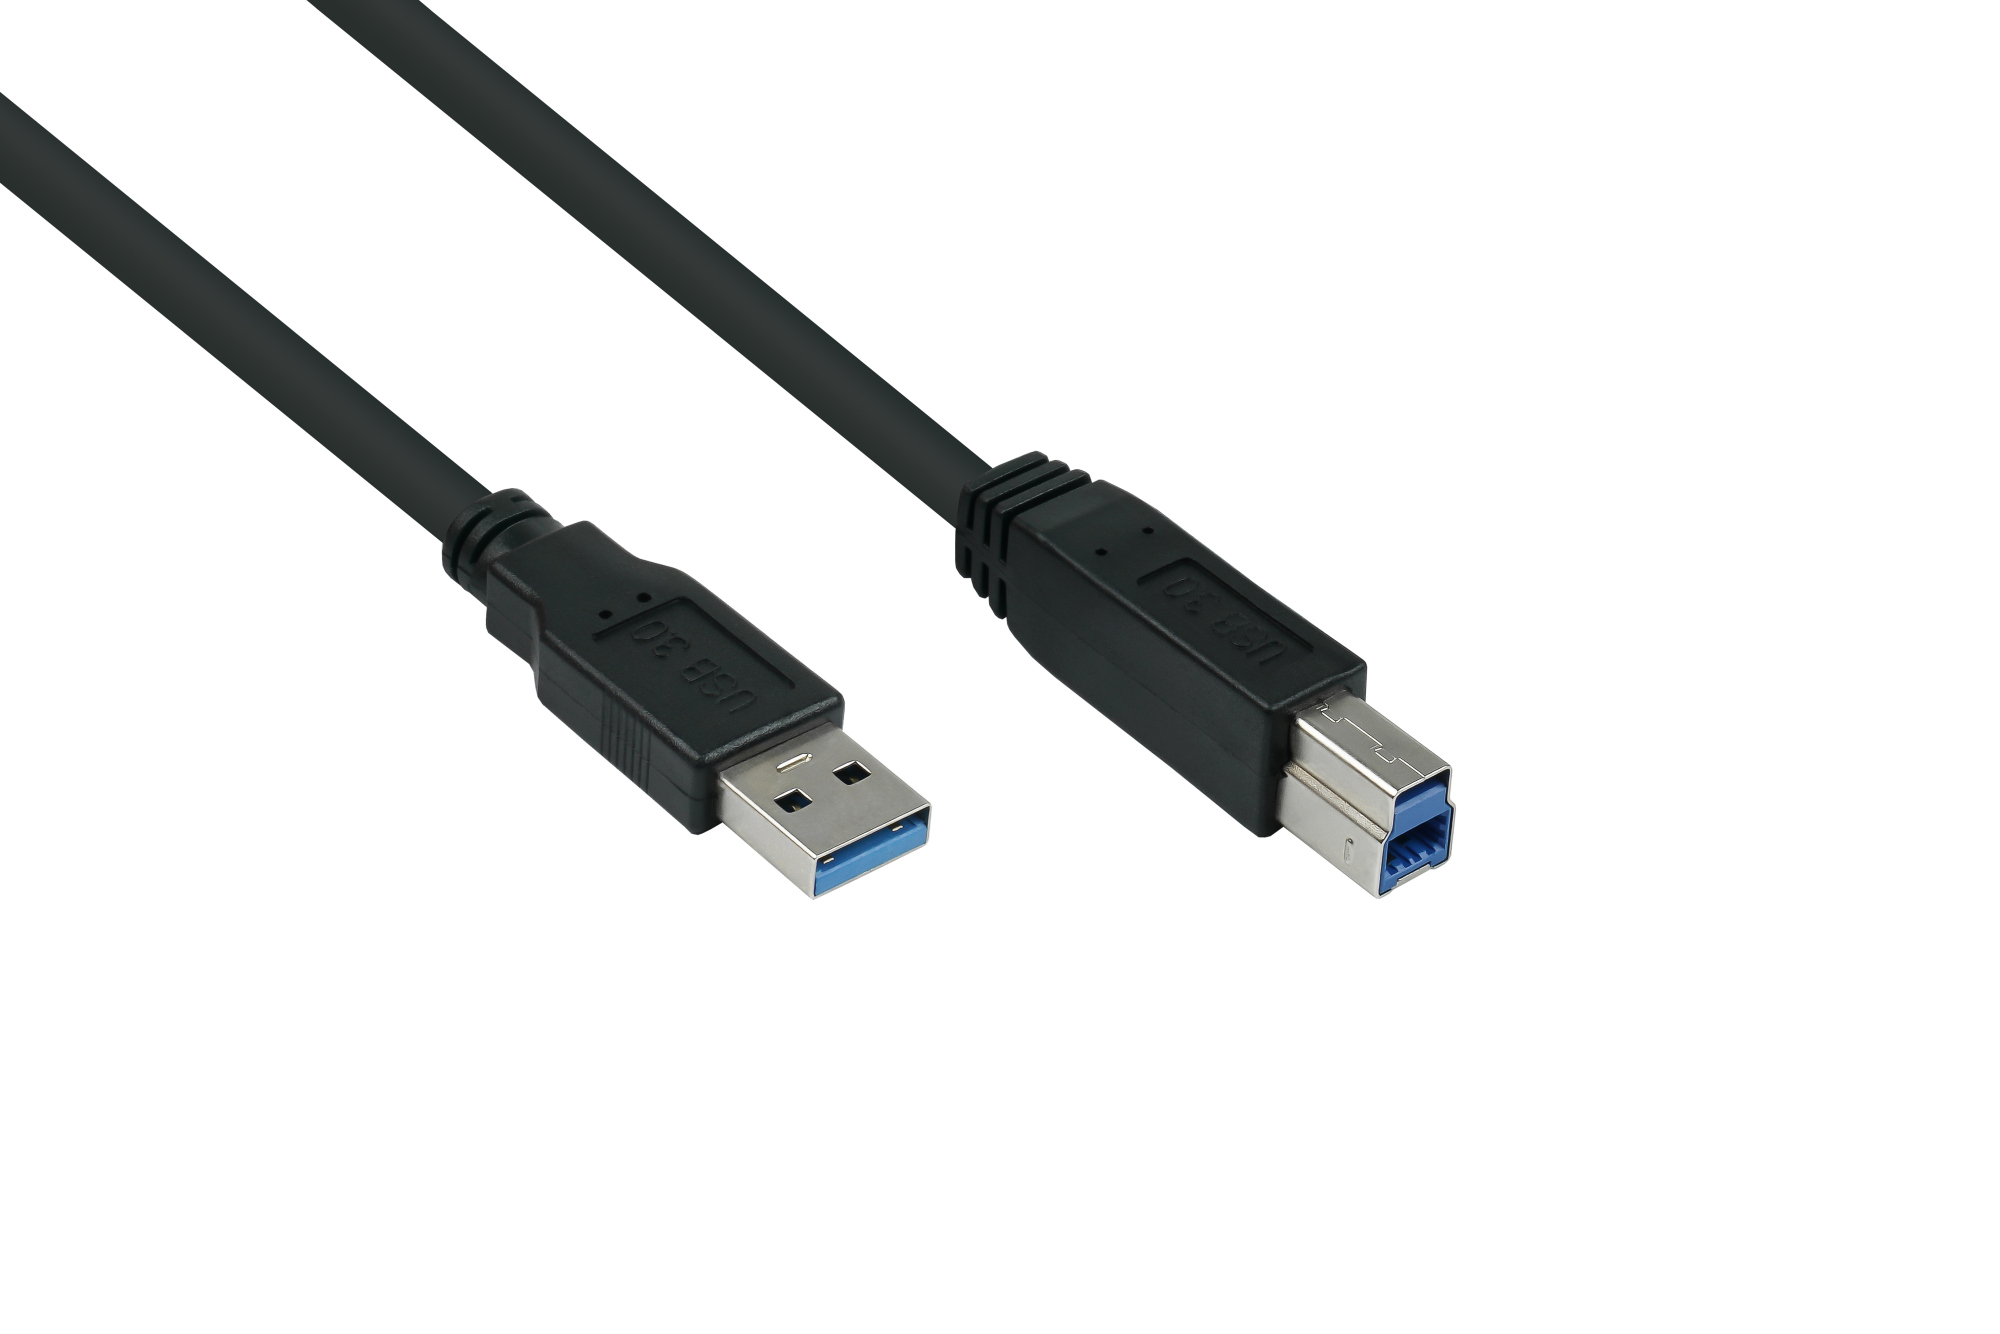 USB 3.0 Kabel Stecker A an Stecker B, Premium, AWG28 / AWG24, UL, KUPFER, schwarz, 1,8m